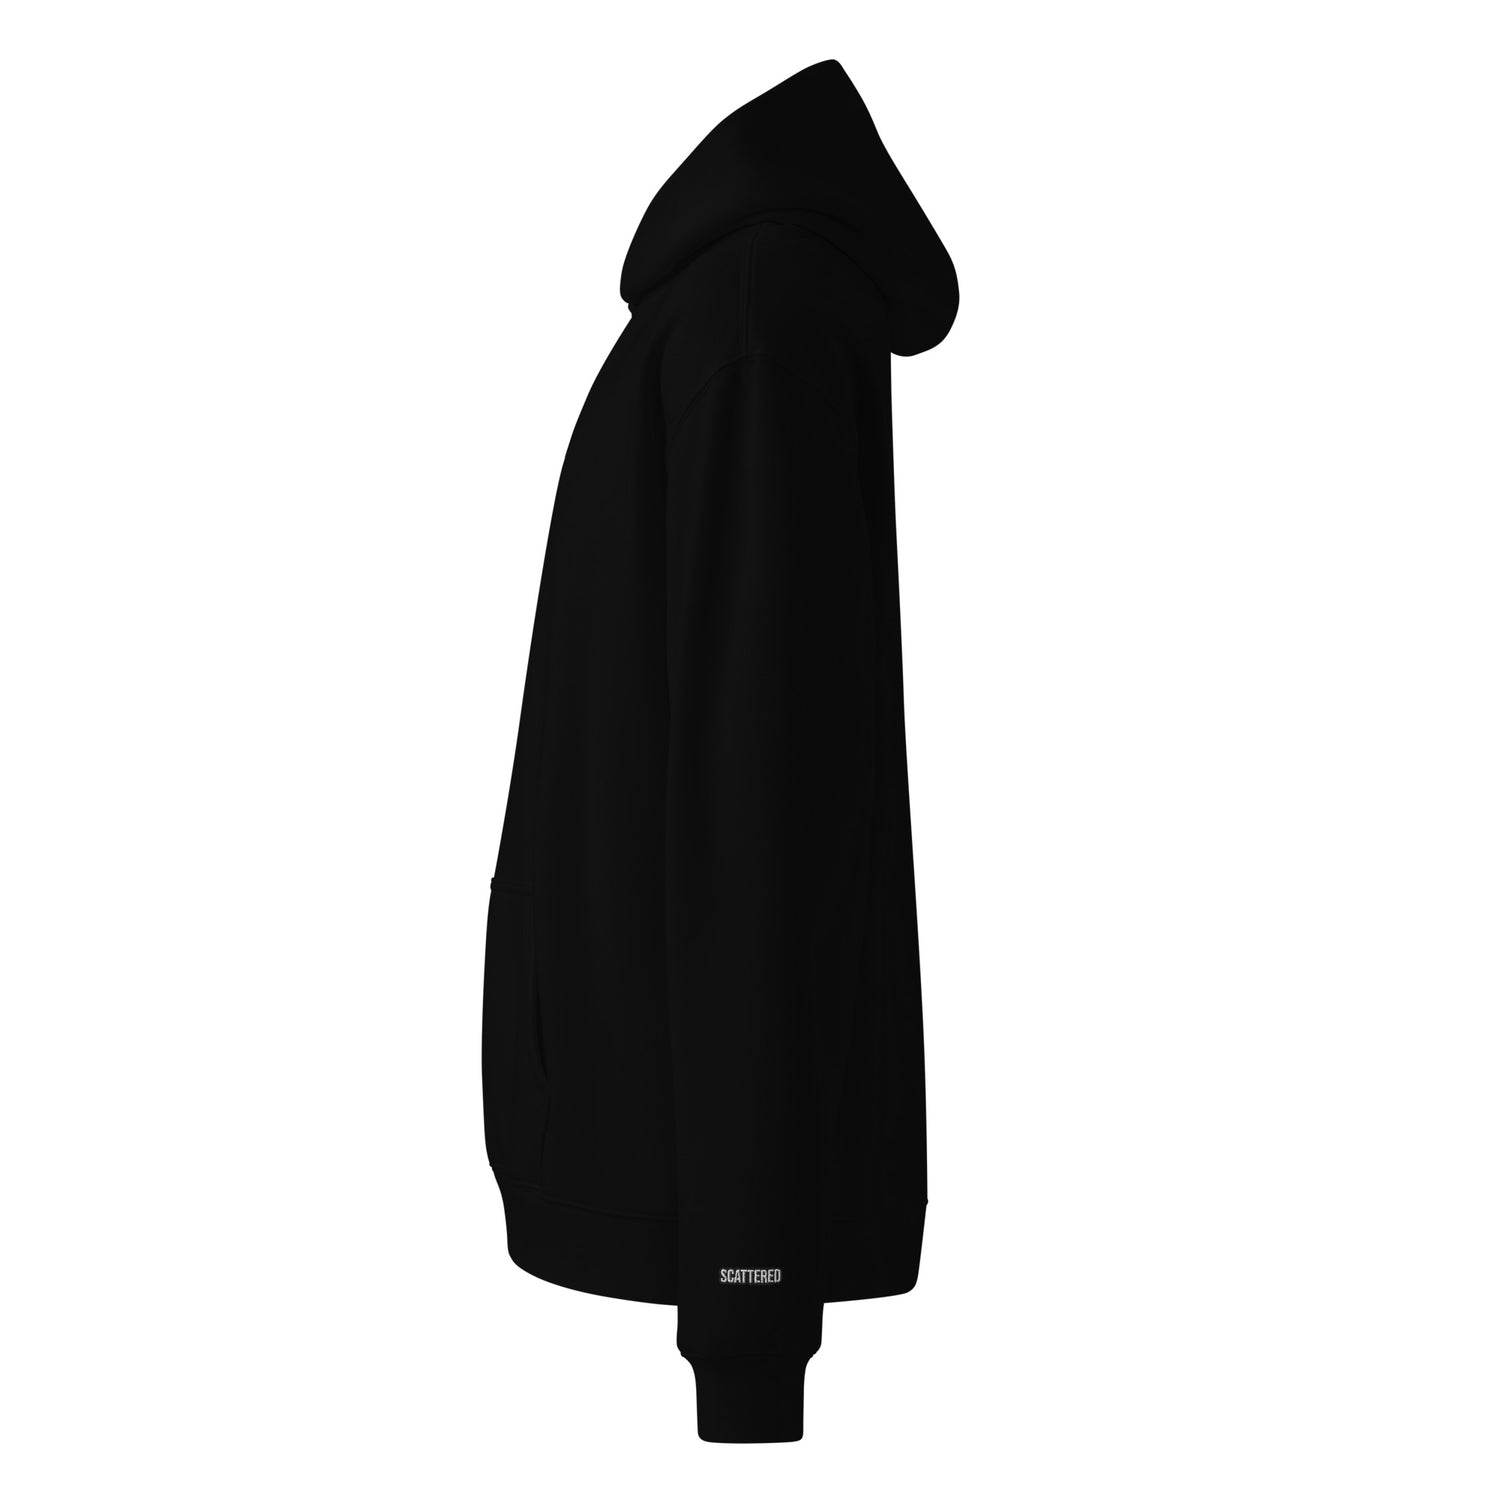 New York Apple Logo Embroidered Black Streetwear Hoodie Sweatshirt | Scattered